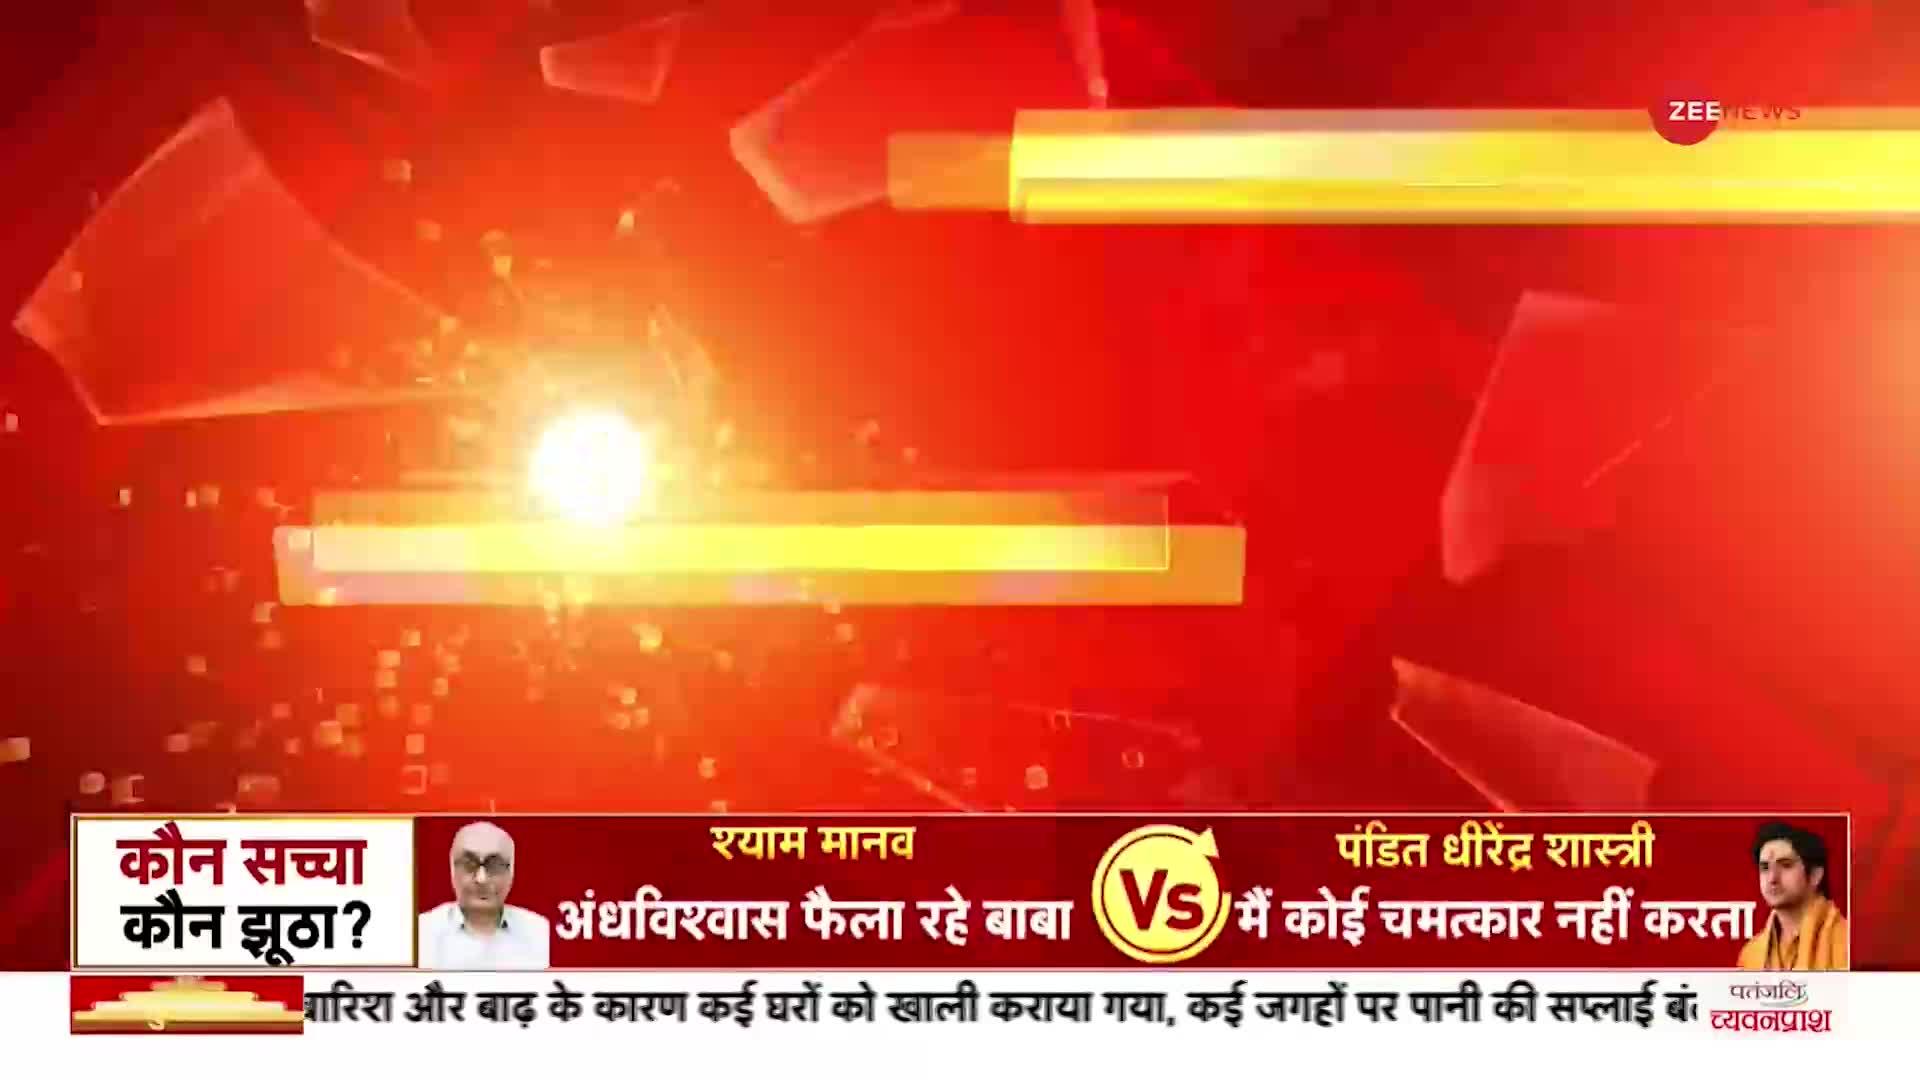 Breaking: धीरेंद्र शास्त्री के समर्थन में उतरे BJP नेता राम कदम, कहा- सनातन धर्म गहरा विज्ञानं है